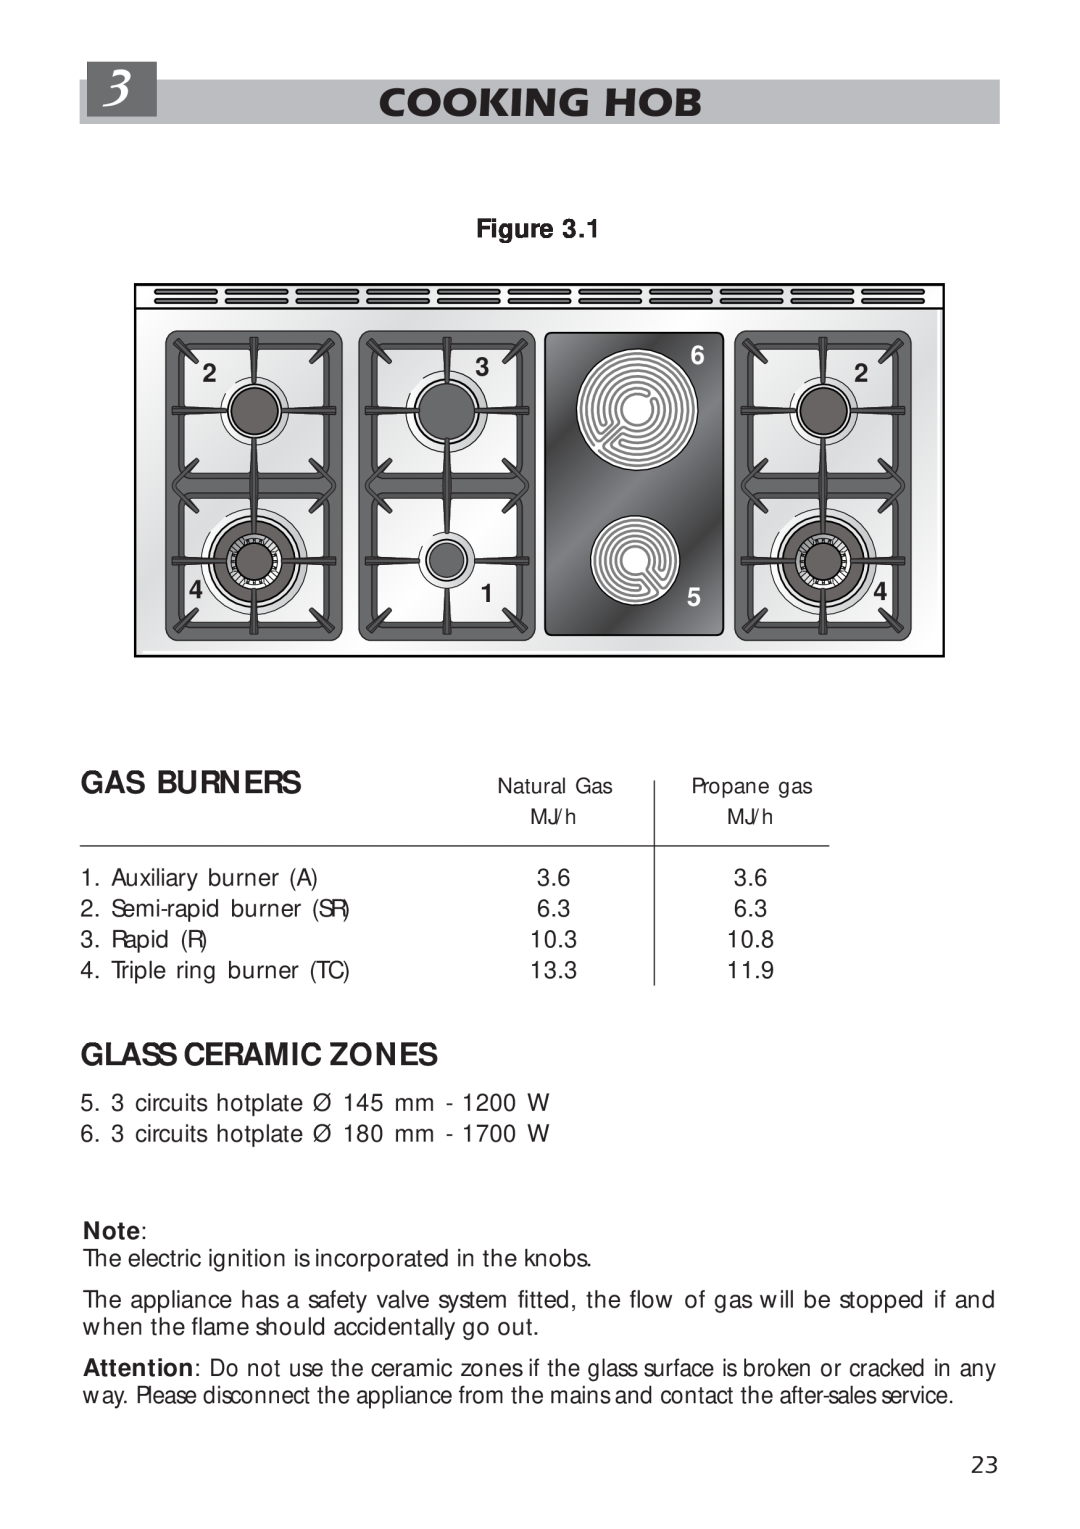 DeLonghi A 1346 G manual Cooking Hob, Gas Burners, Glass Ceramic Zones 